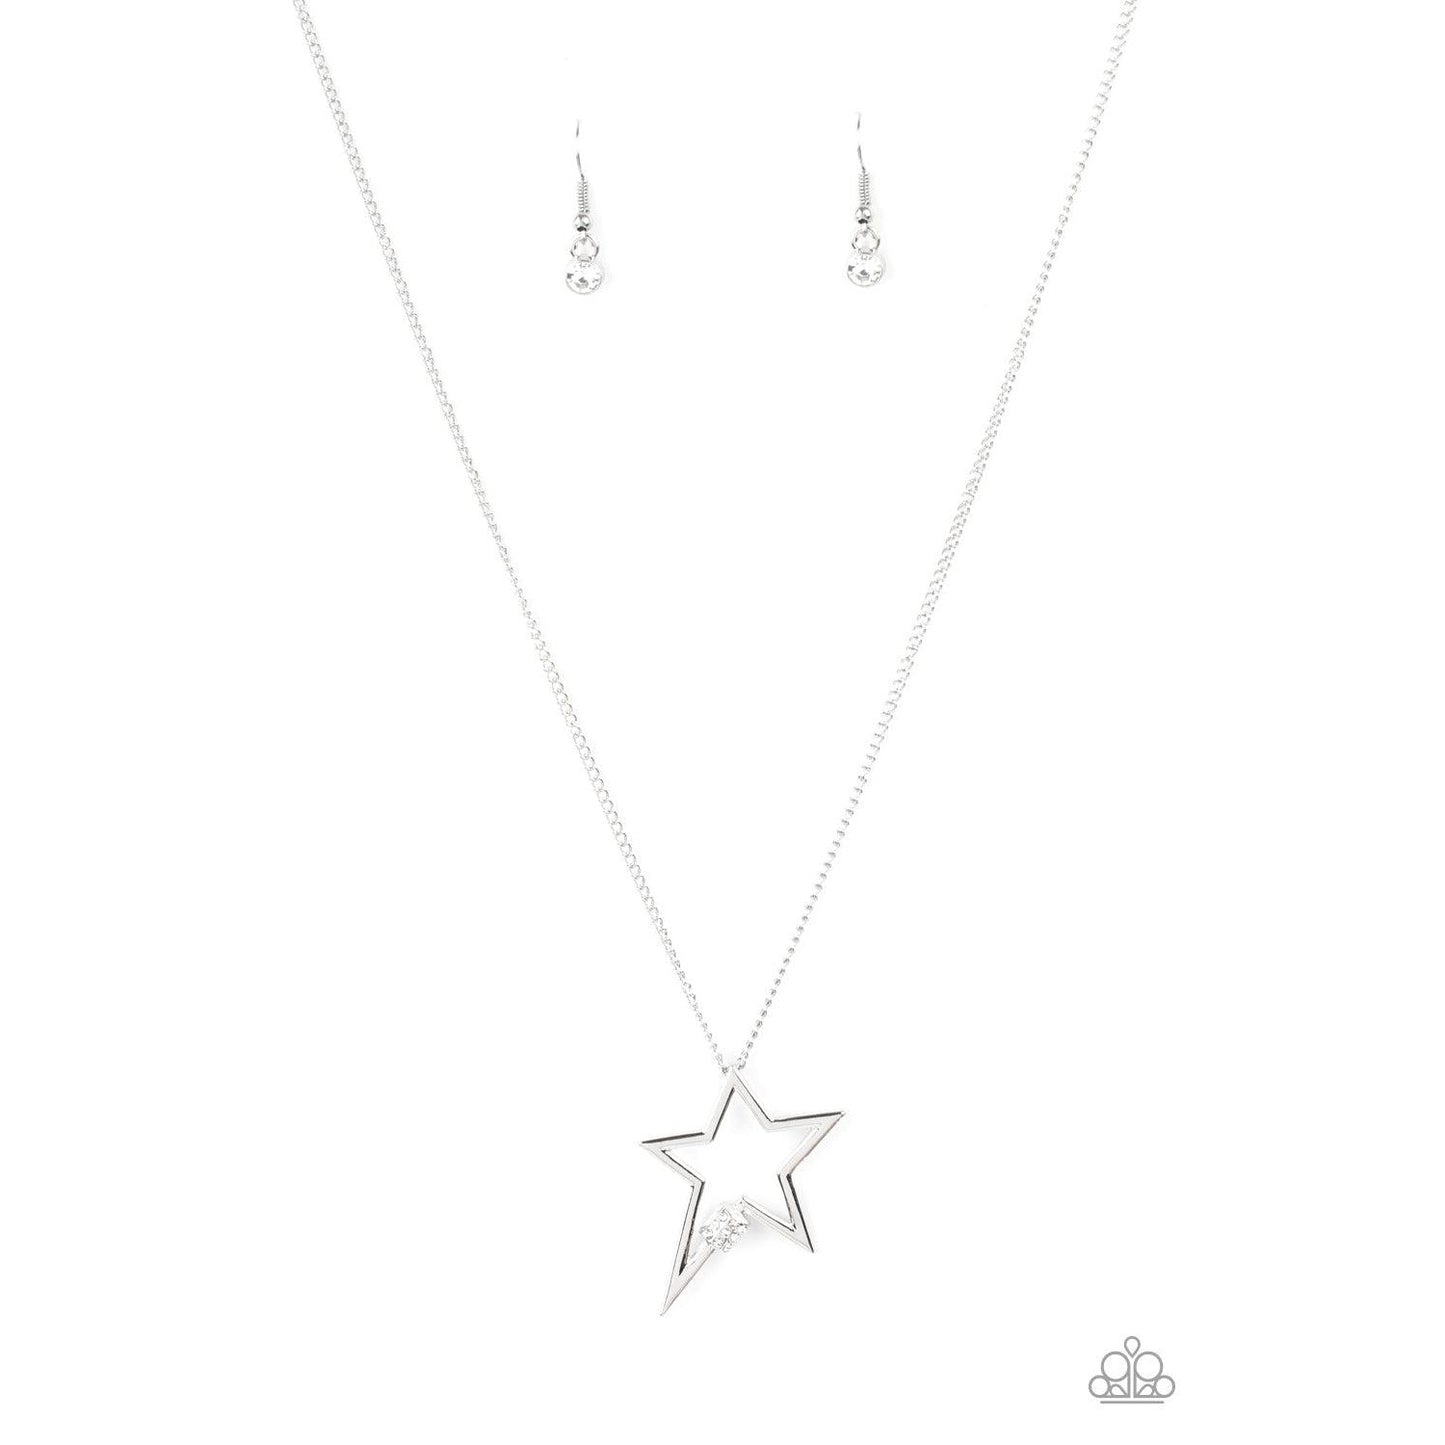 Light Up The Sky - White Star Necklace - Bling by Danielle Baker